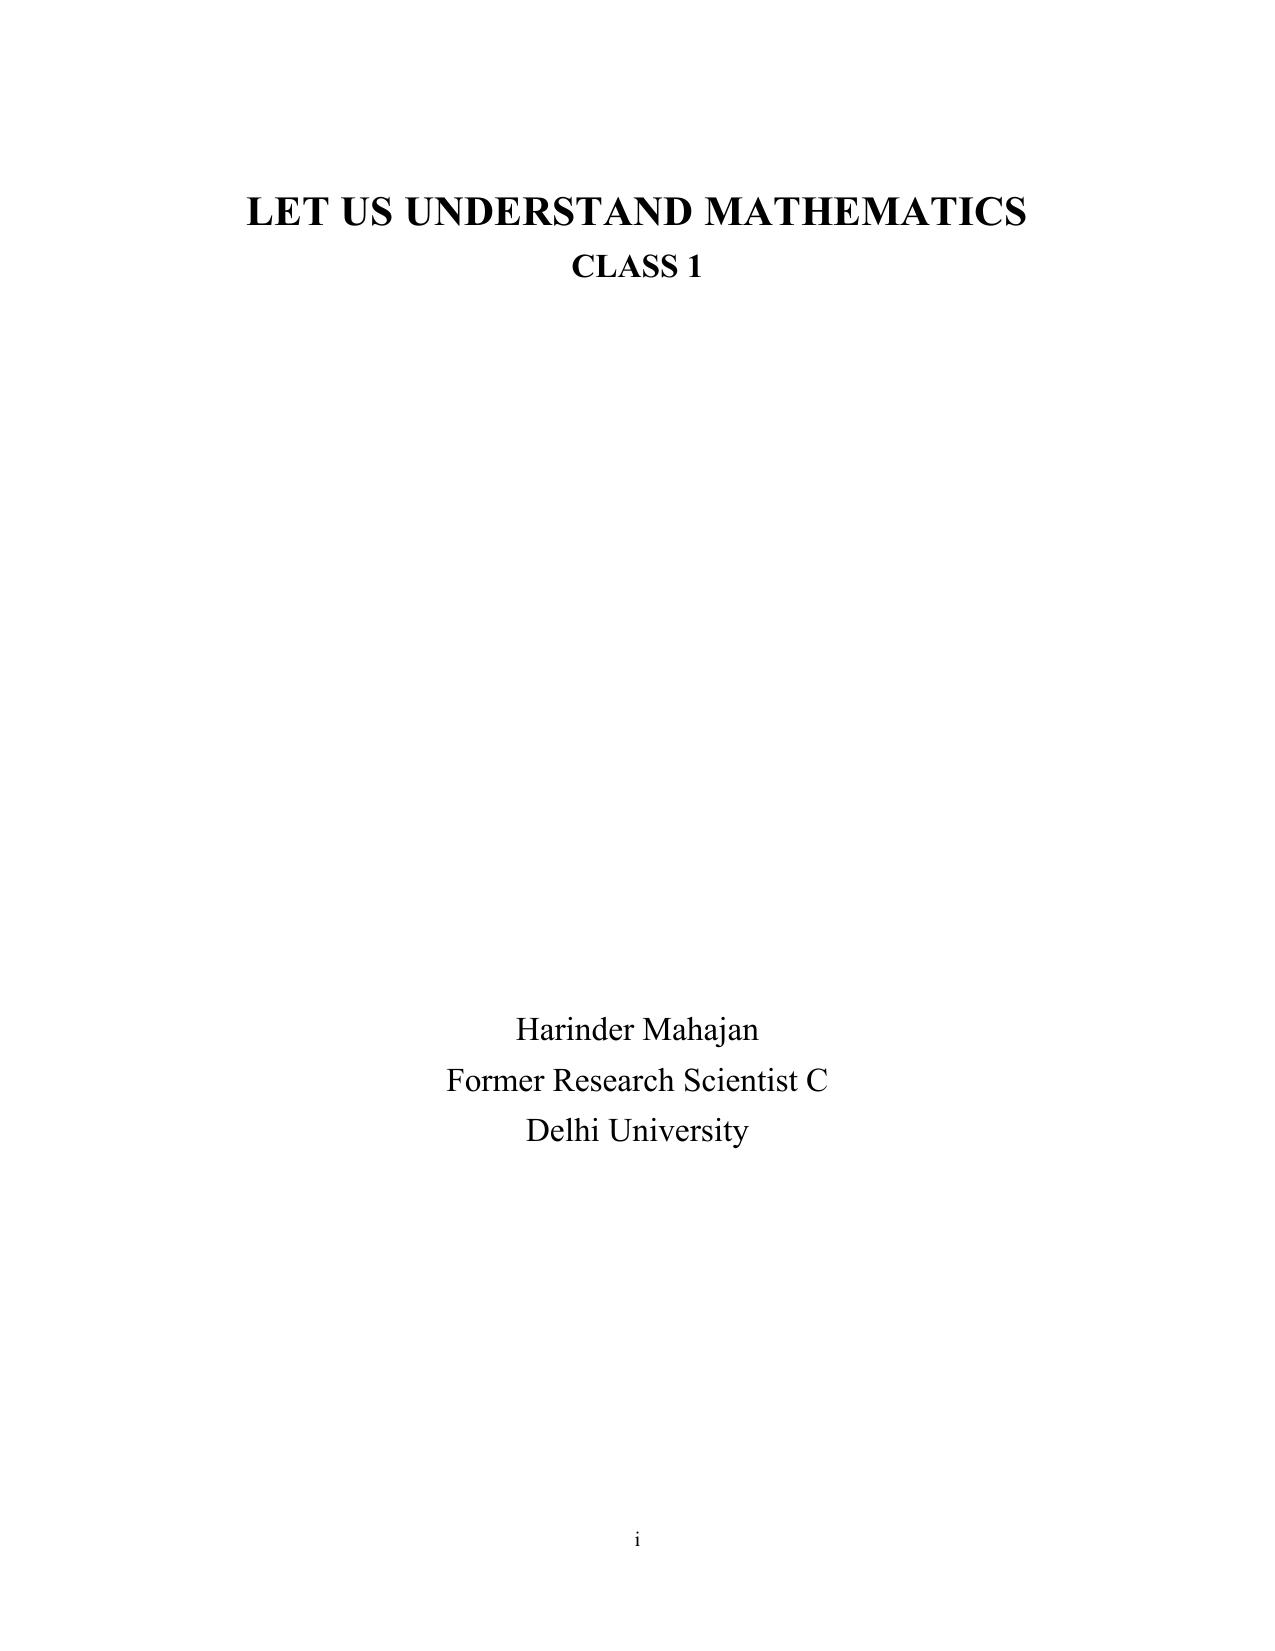 Let Us Understand Mathematics Class1